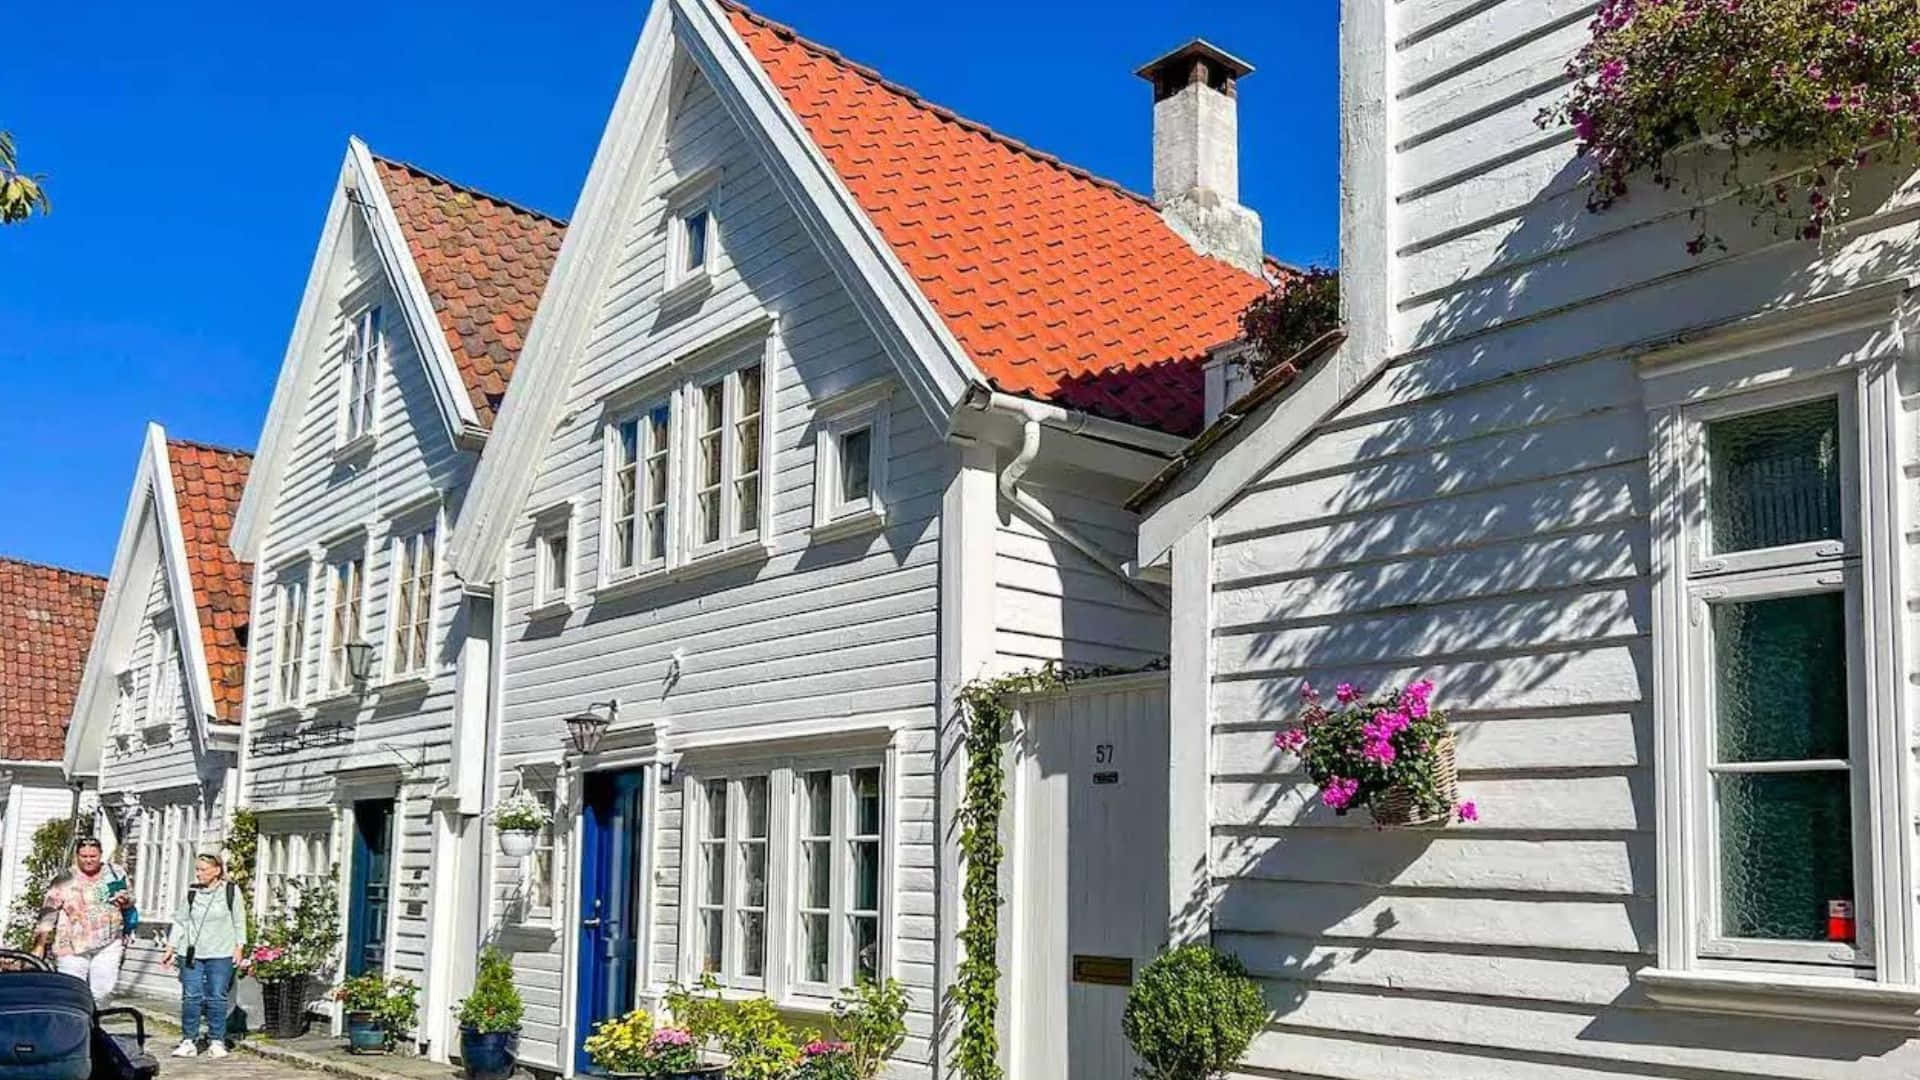 Stavanger Traditional White Wooden Houses Wallpaper